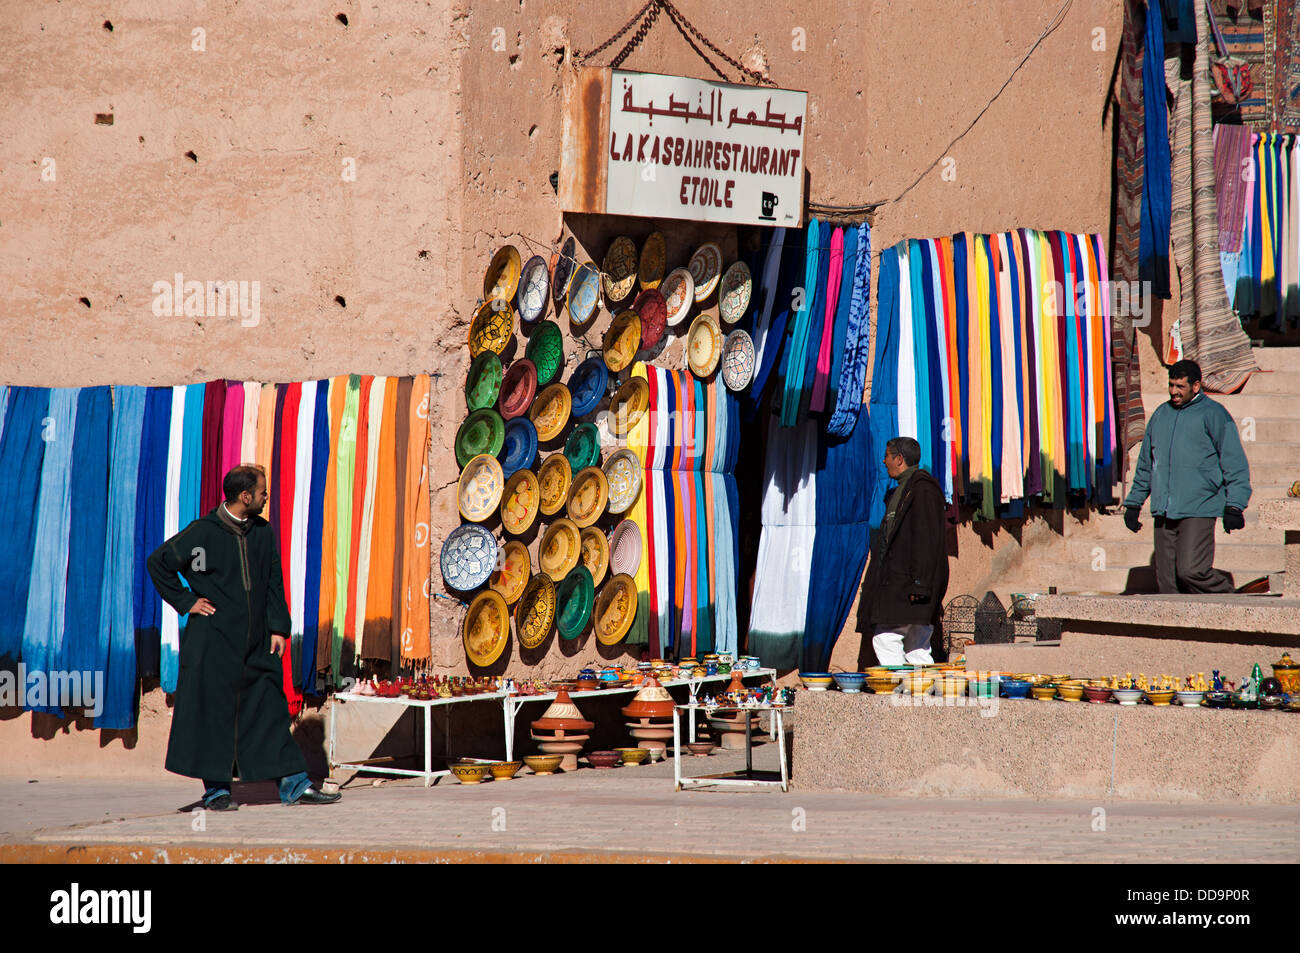 Magasins de souvenirs dans un traditionnel bâtiment adobe en face de Kasbah de Taourirt, Ouarzazate, Maroc Banque D'Images